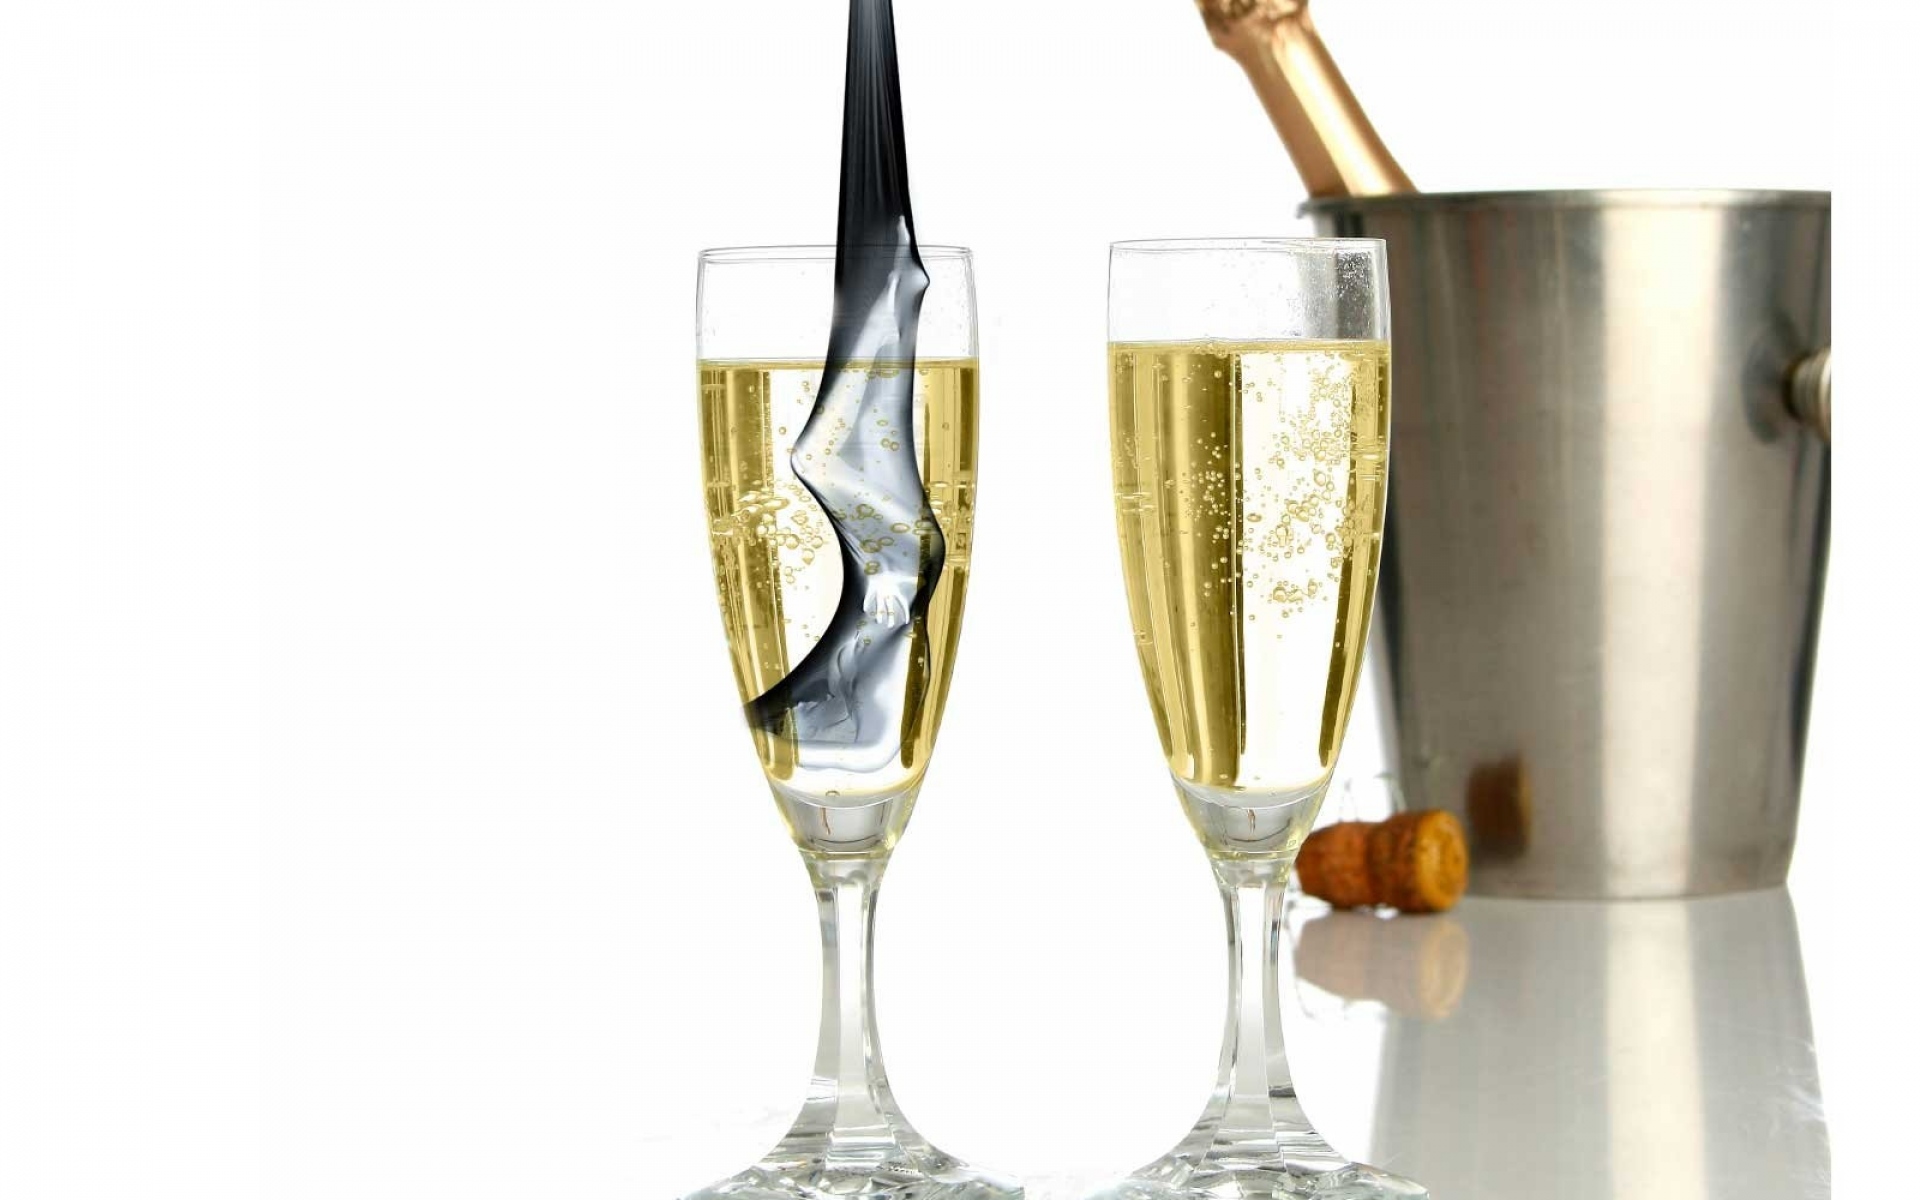 Фото 2 бокала шампанского на столе